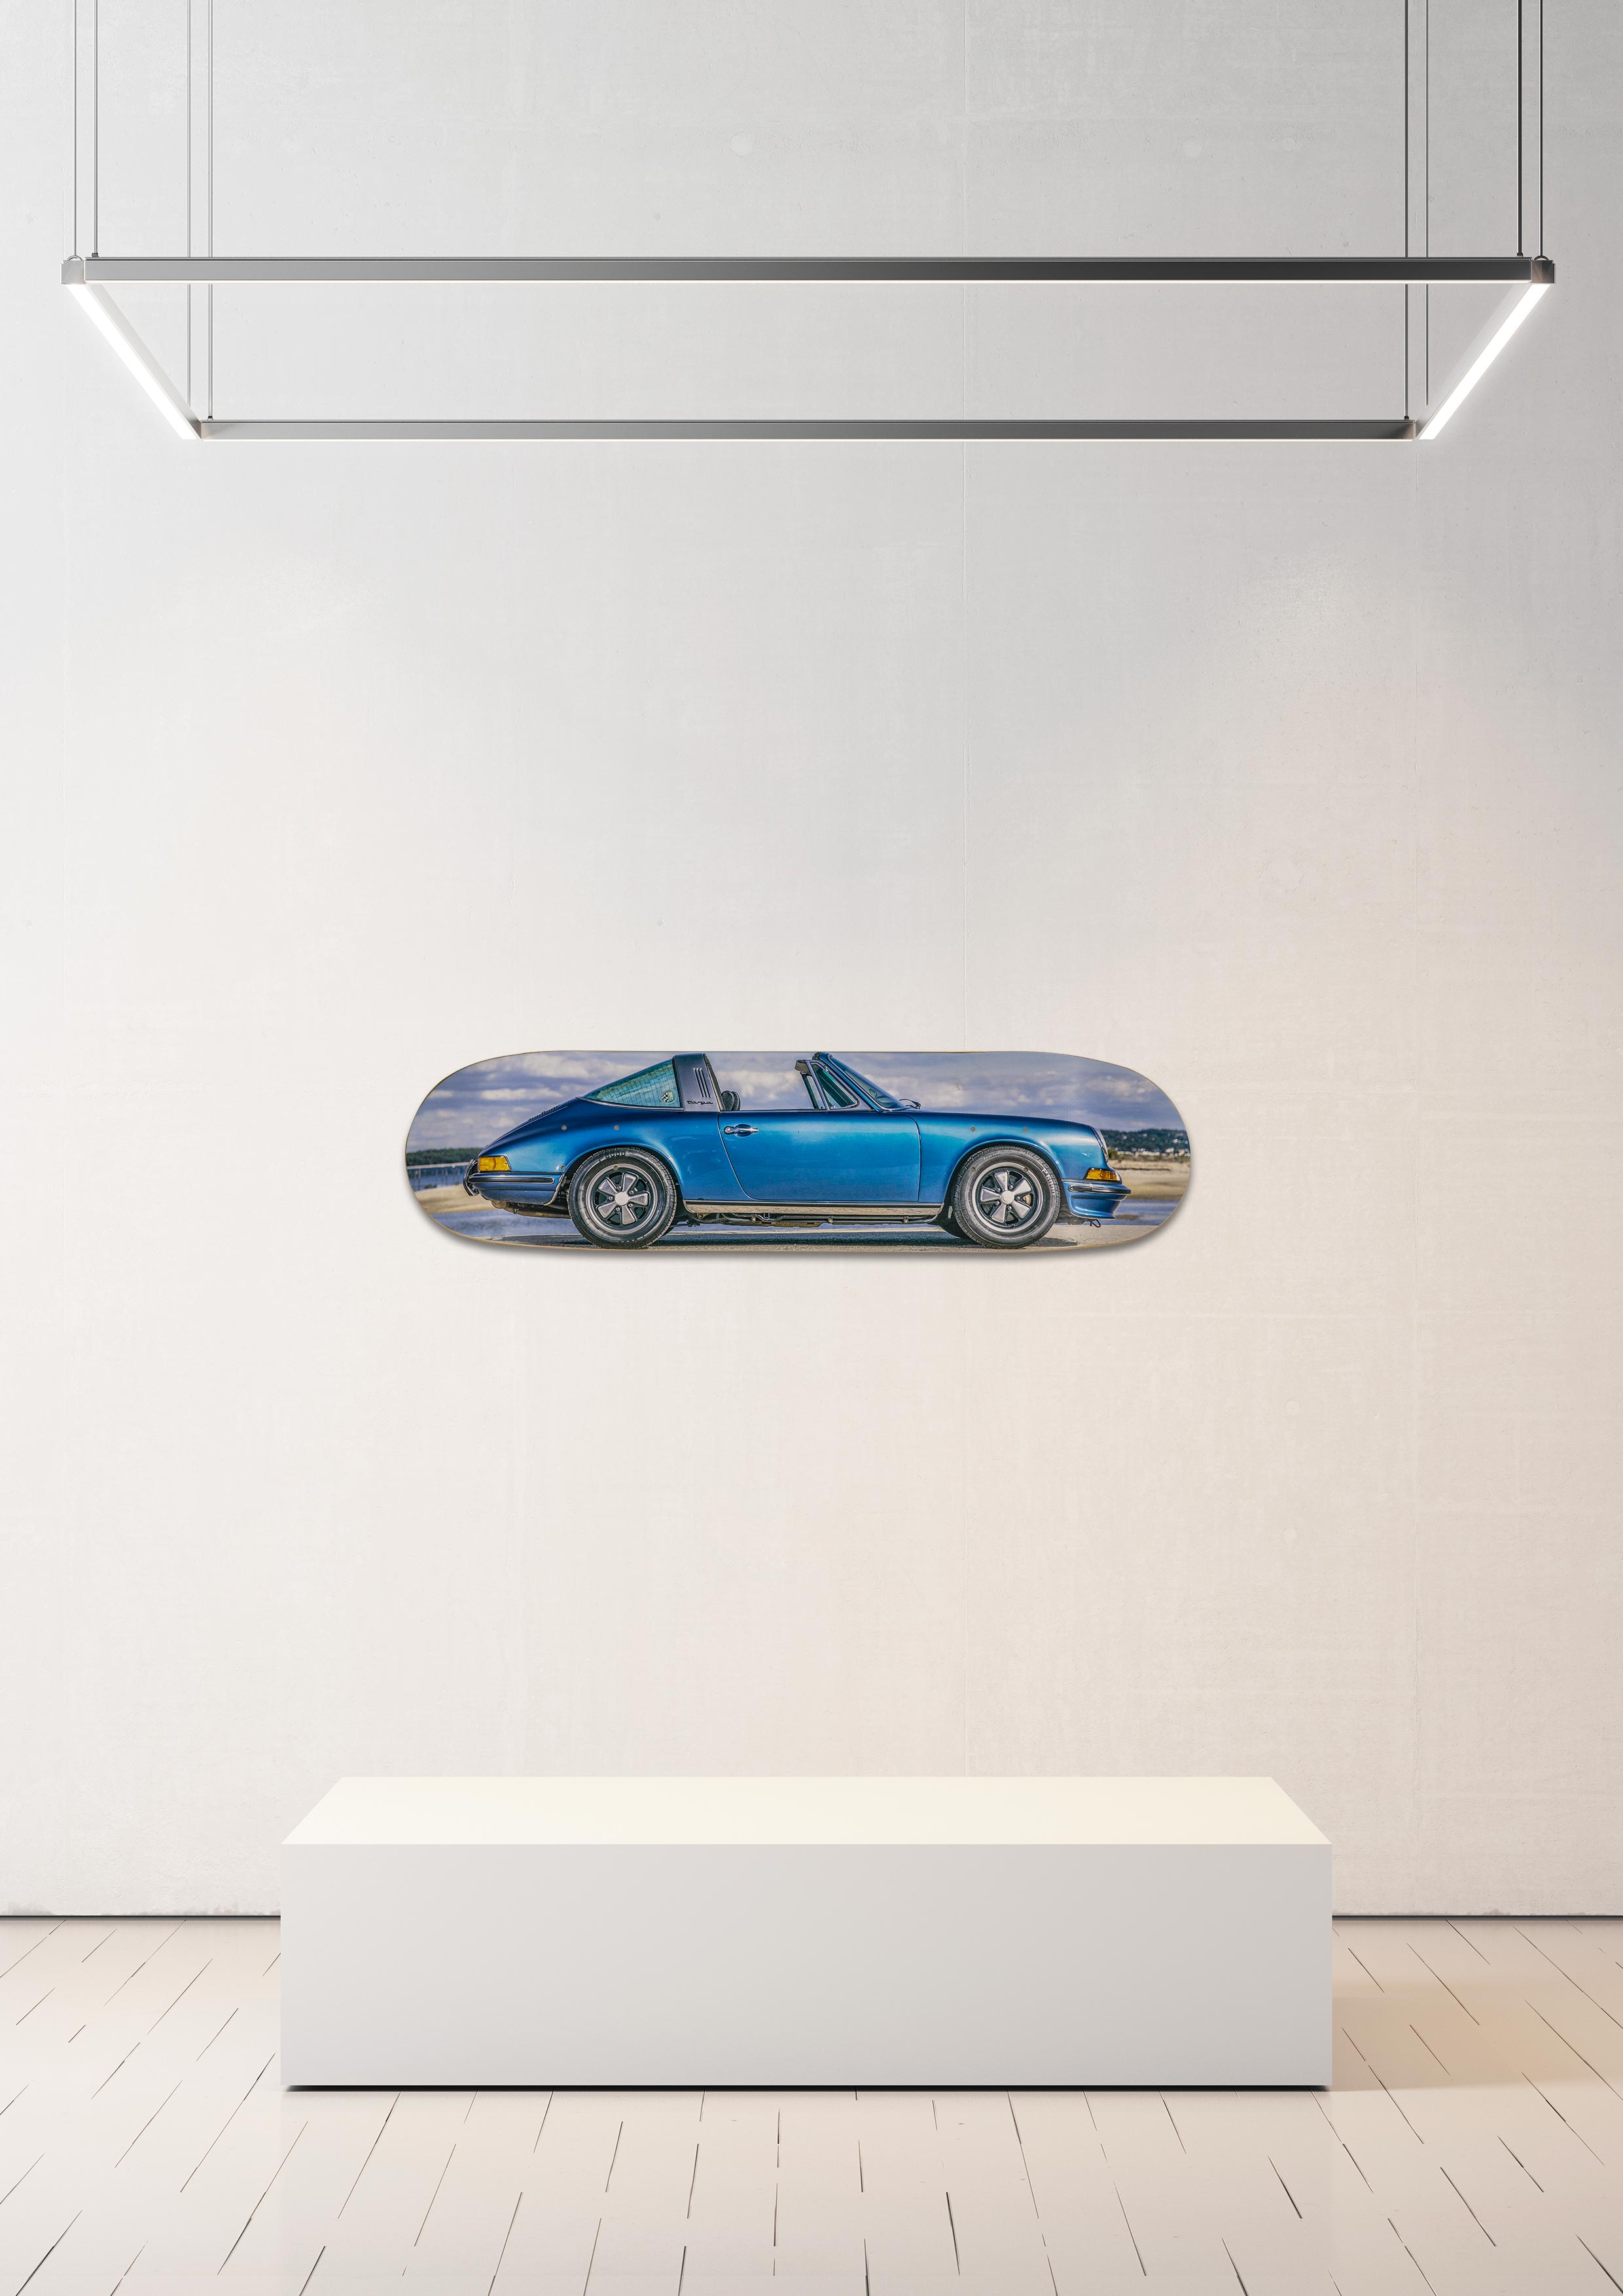 Planche de skate murale - édition très limitée Porsche 911 Targa 2,4 S bleu métallique - Serge Heitz